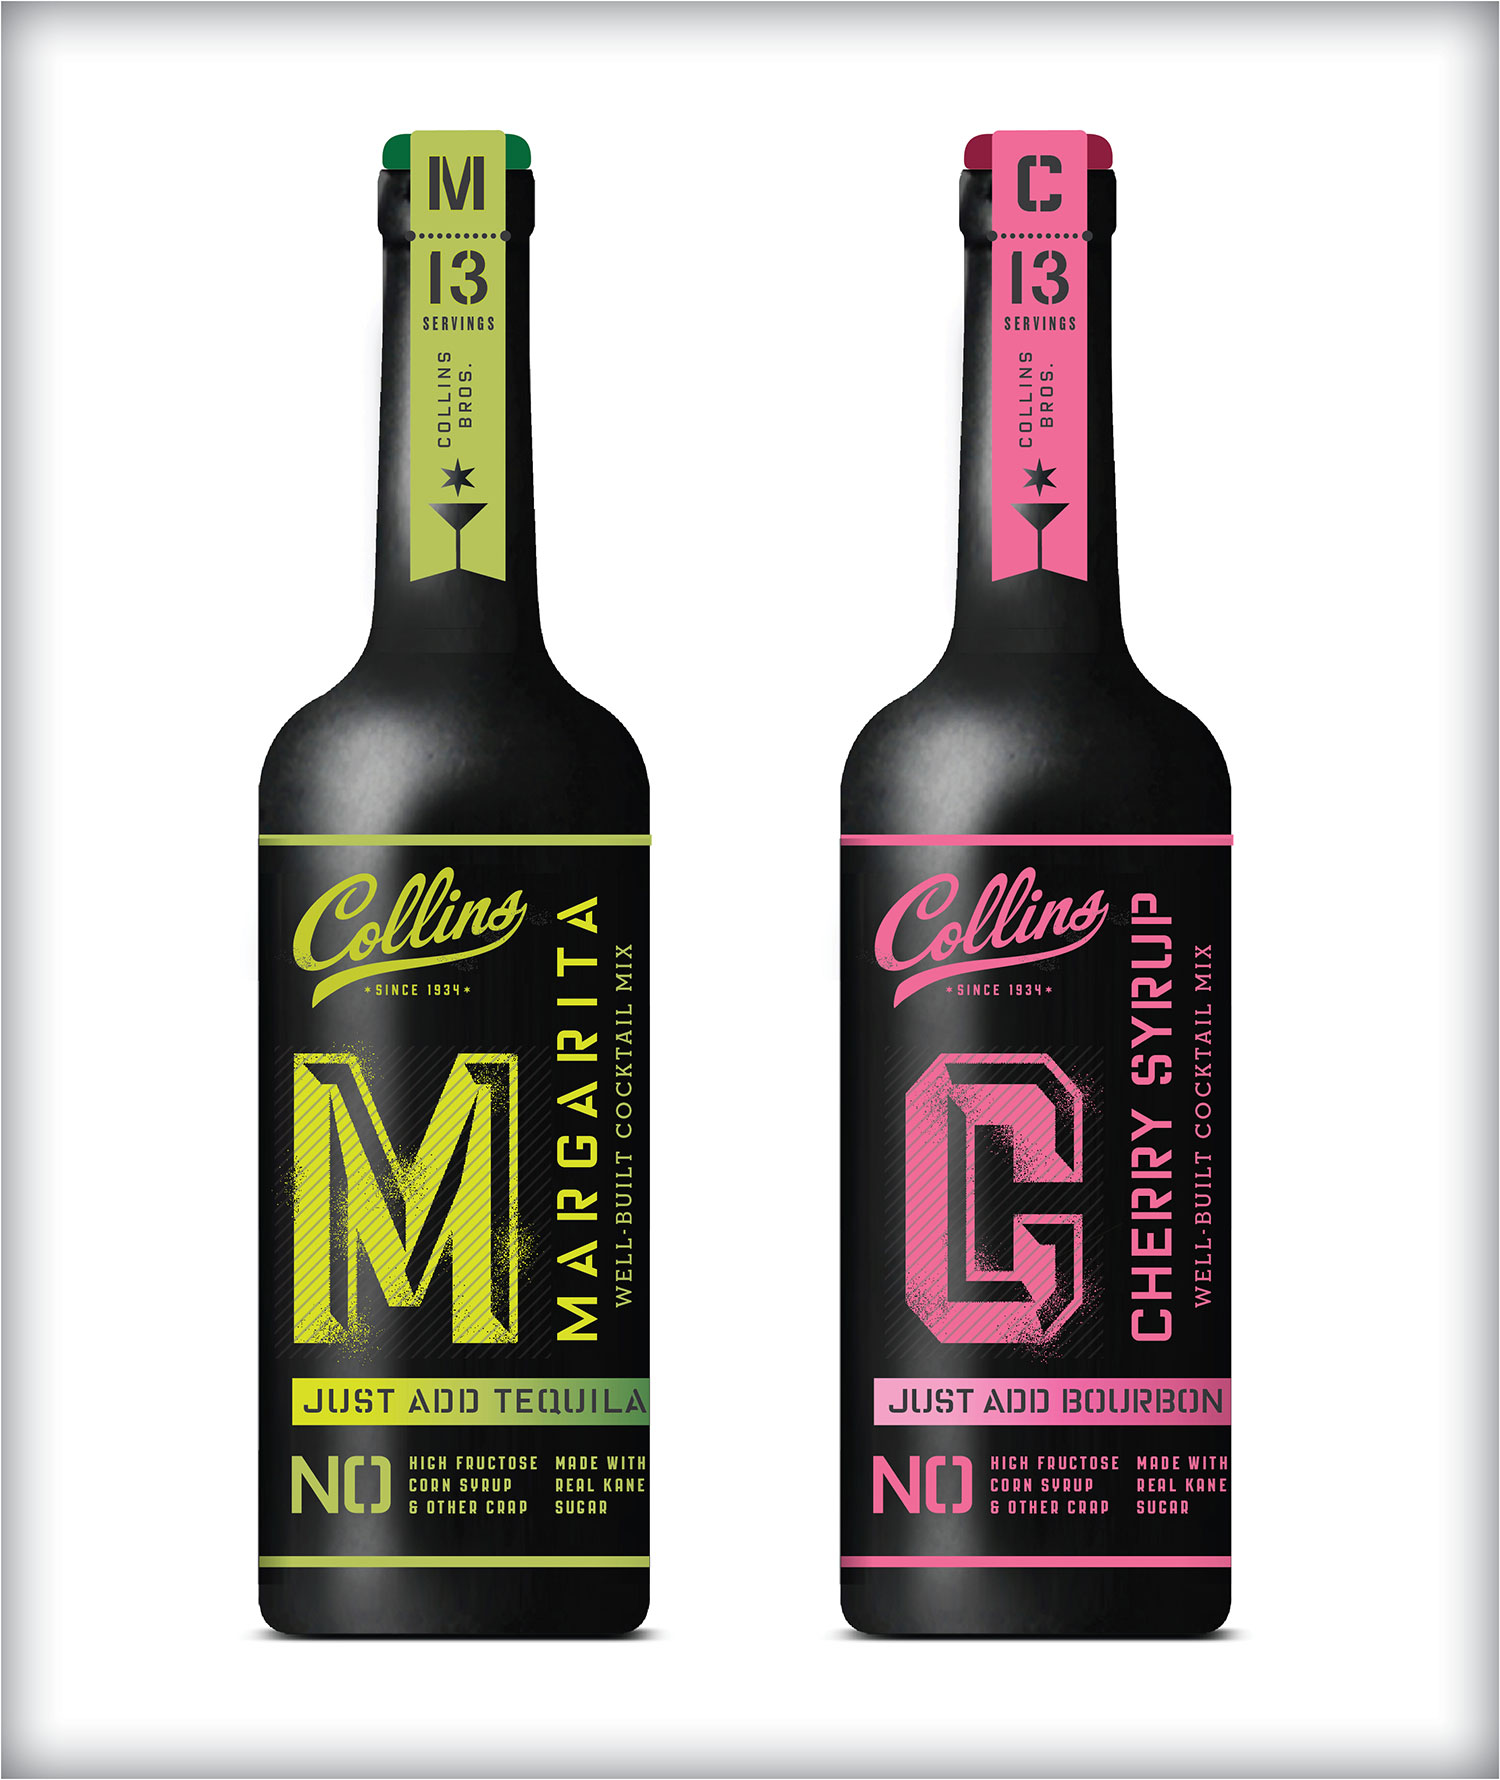 Collins-Rebrand-Packaging-MIXES-Yuri-Shvets-4.jpg